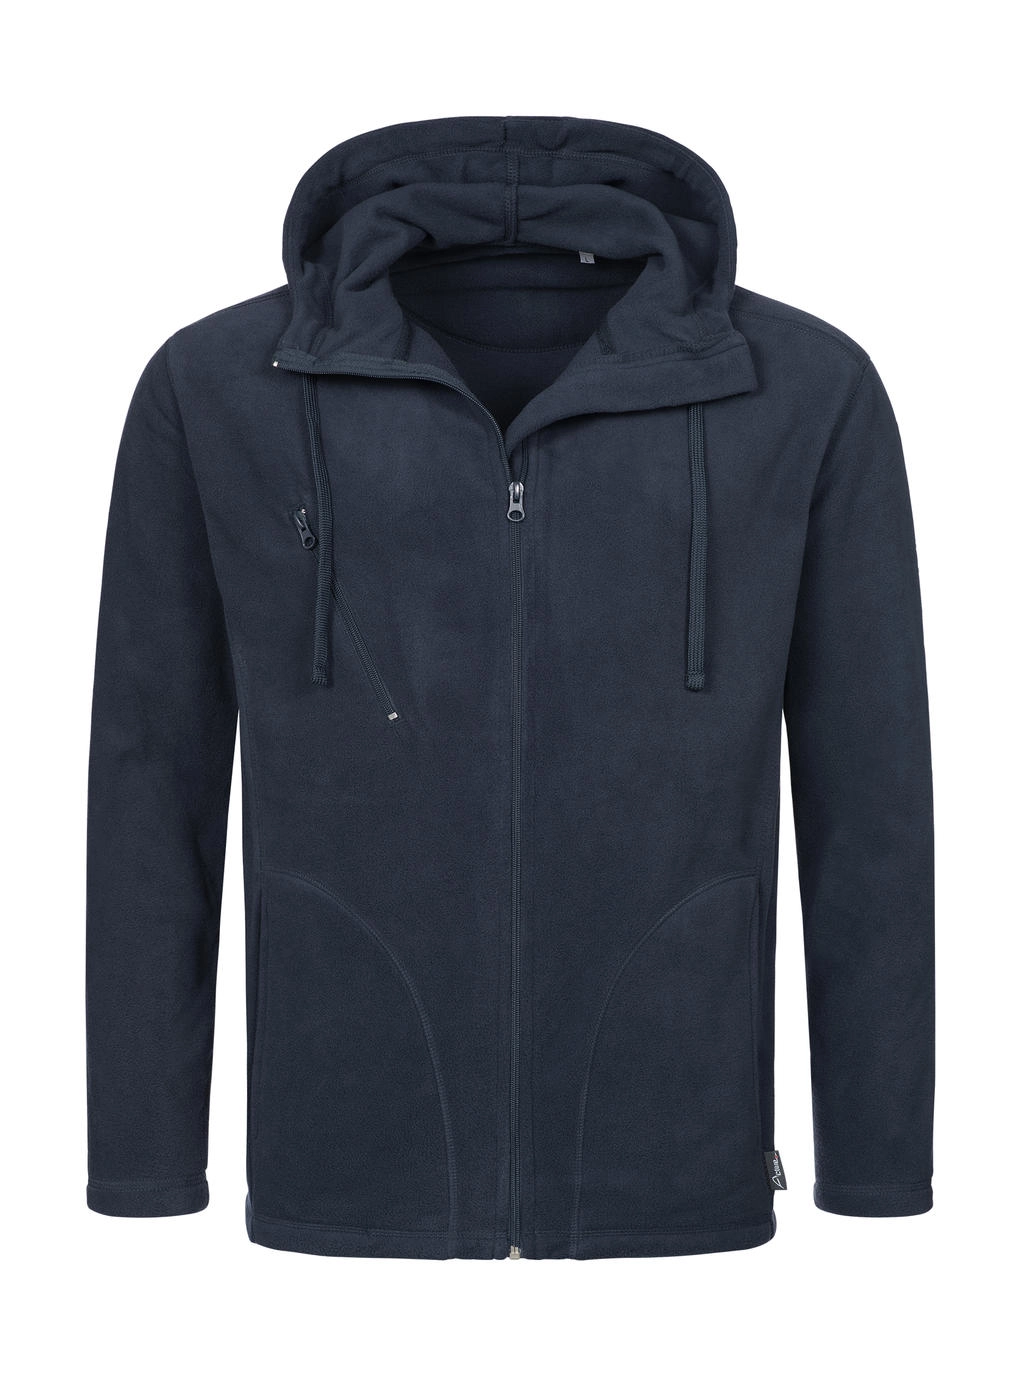 Hooded Fleece Jacket zum Besticken und Bedrucken in der Farbe Blue Midnight mit Ihren Logo, Schriftzug oder Motiv.